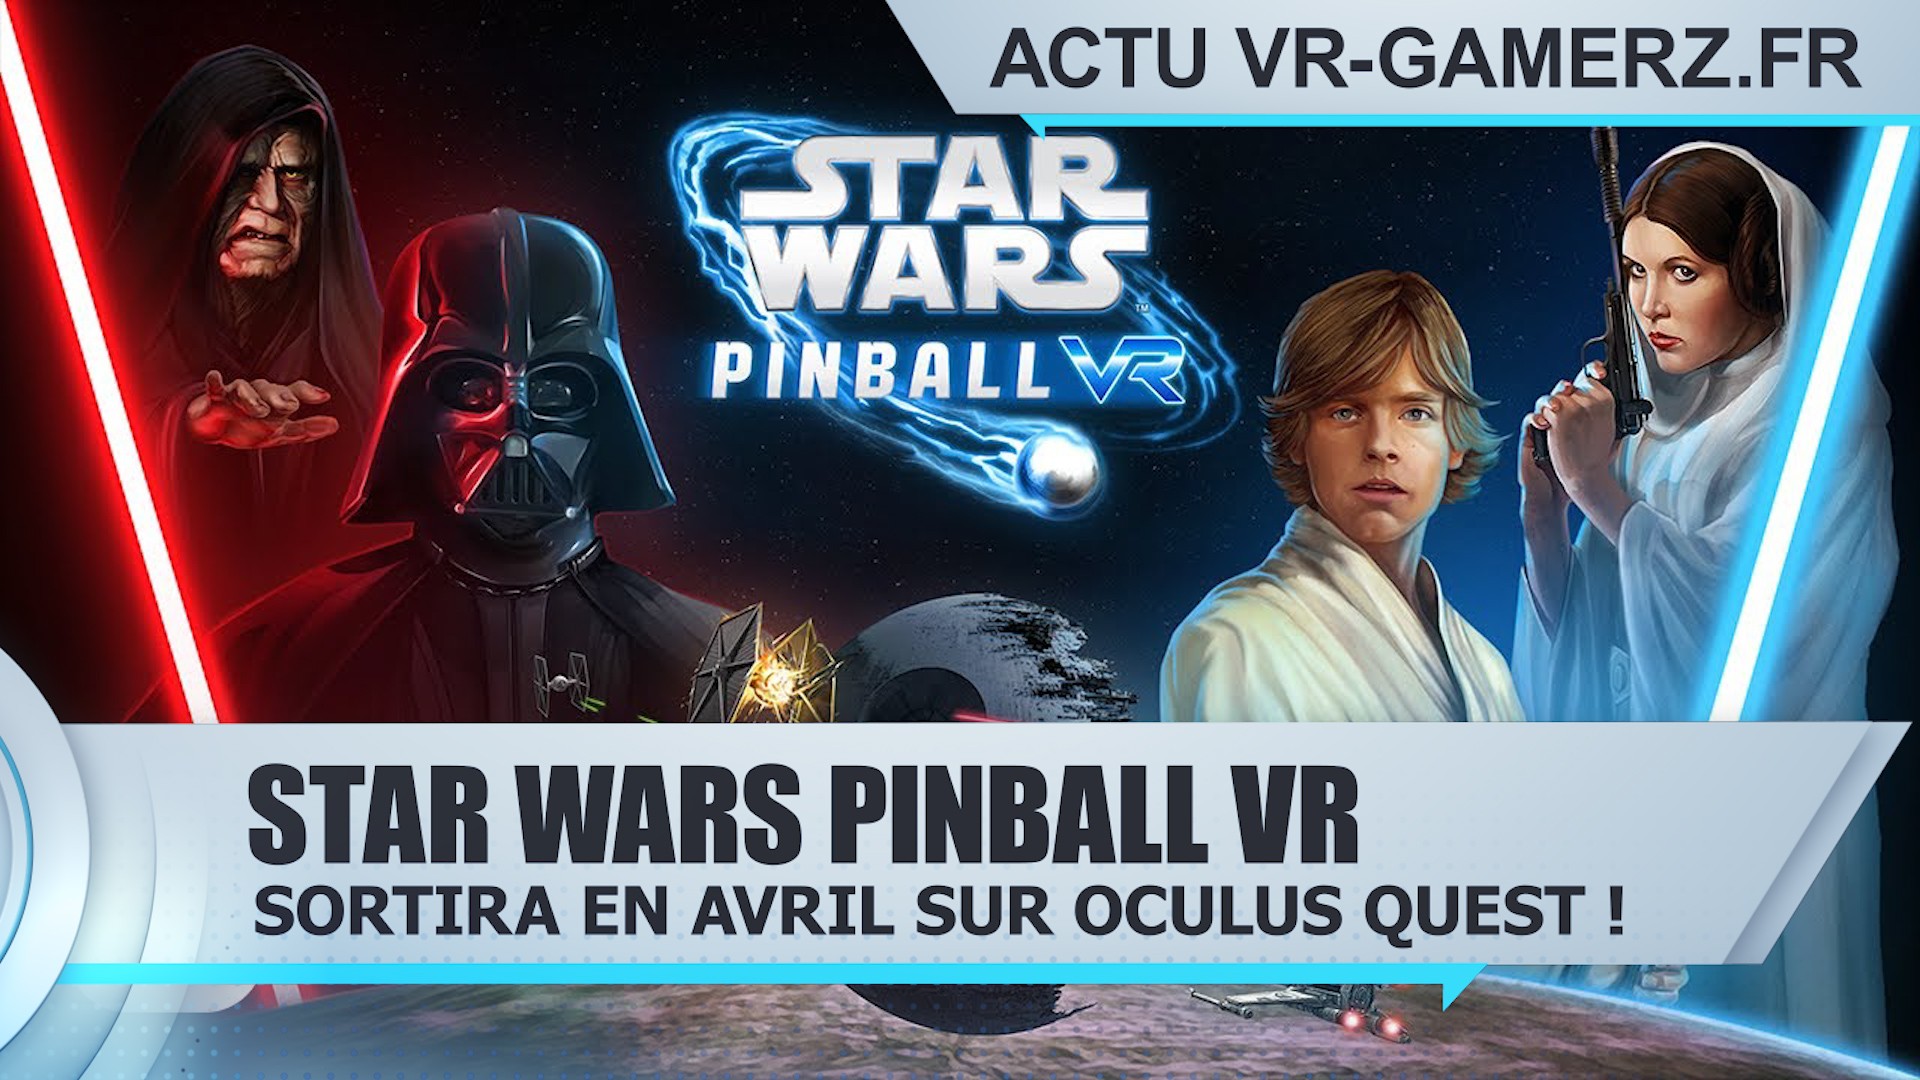 Star Wars Pinball VR sortira en Avril sur Oculus quest !